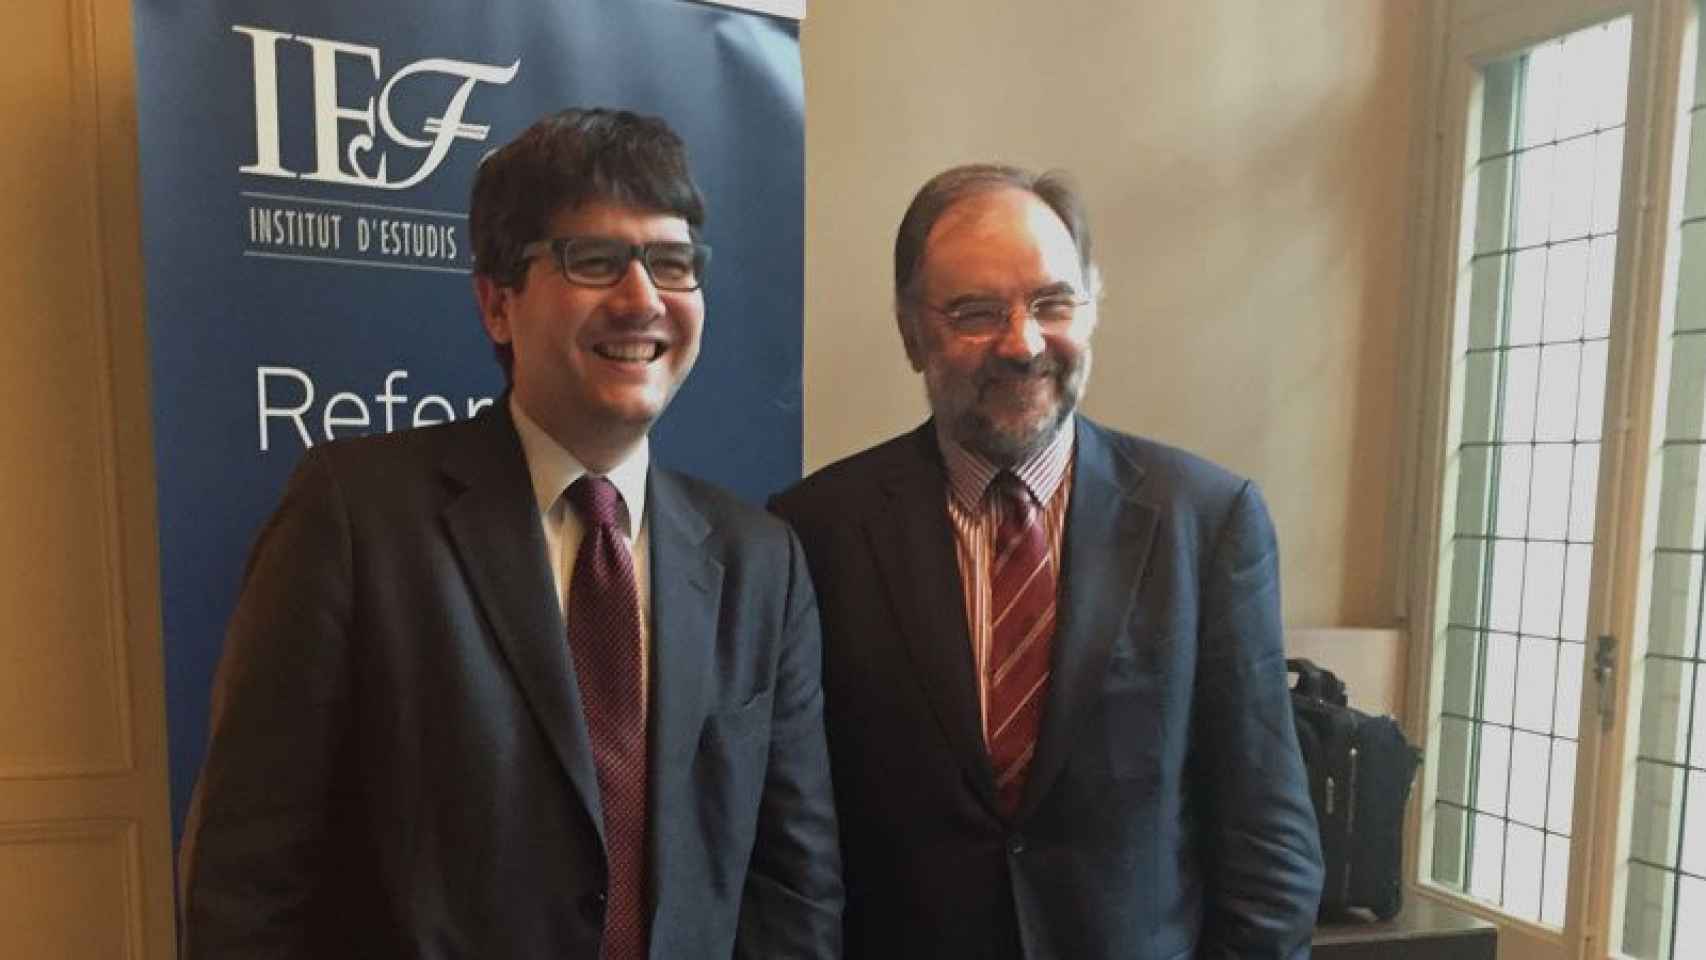 El director de educación financiera del IEF, Jordi Martínez (izquierda), y el presidente, Josep Soler (derecha)